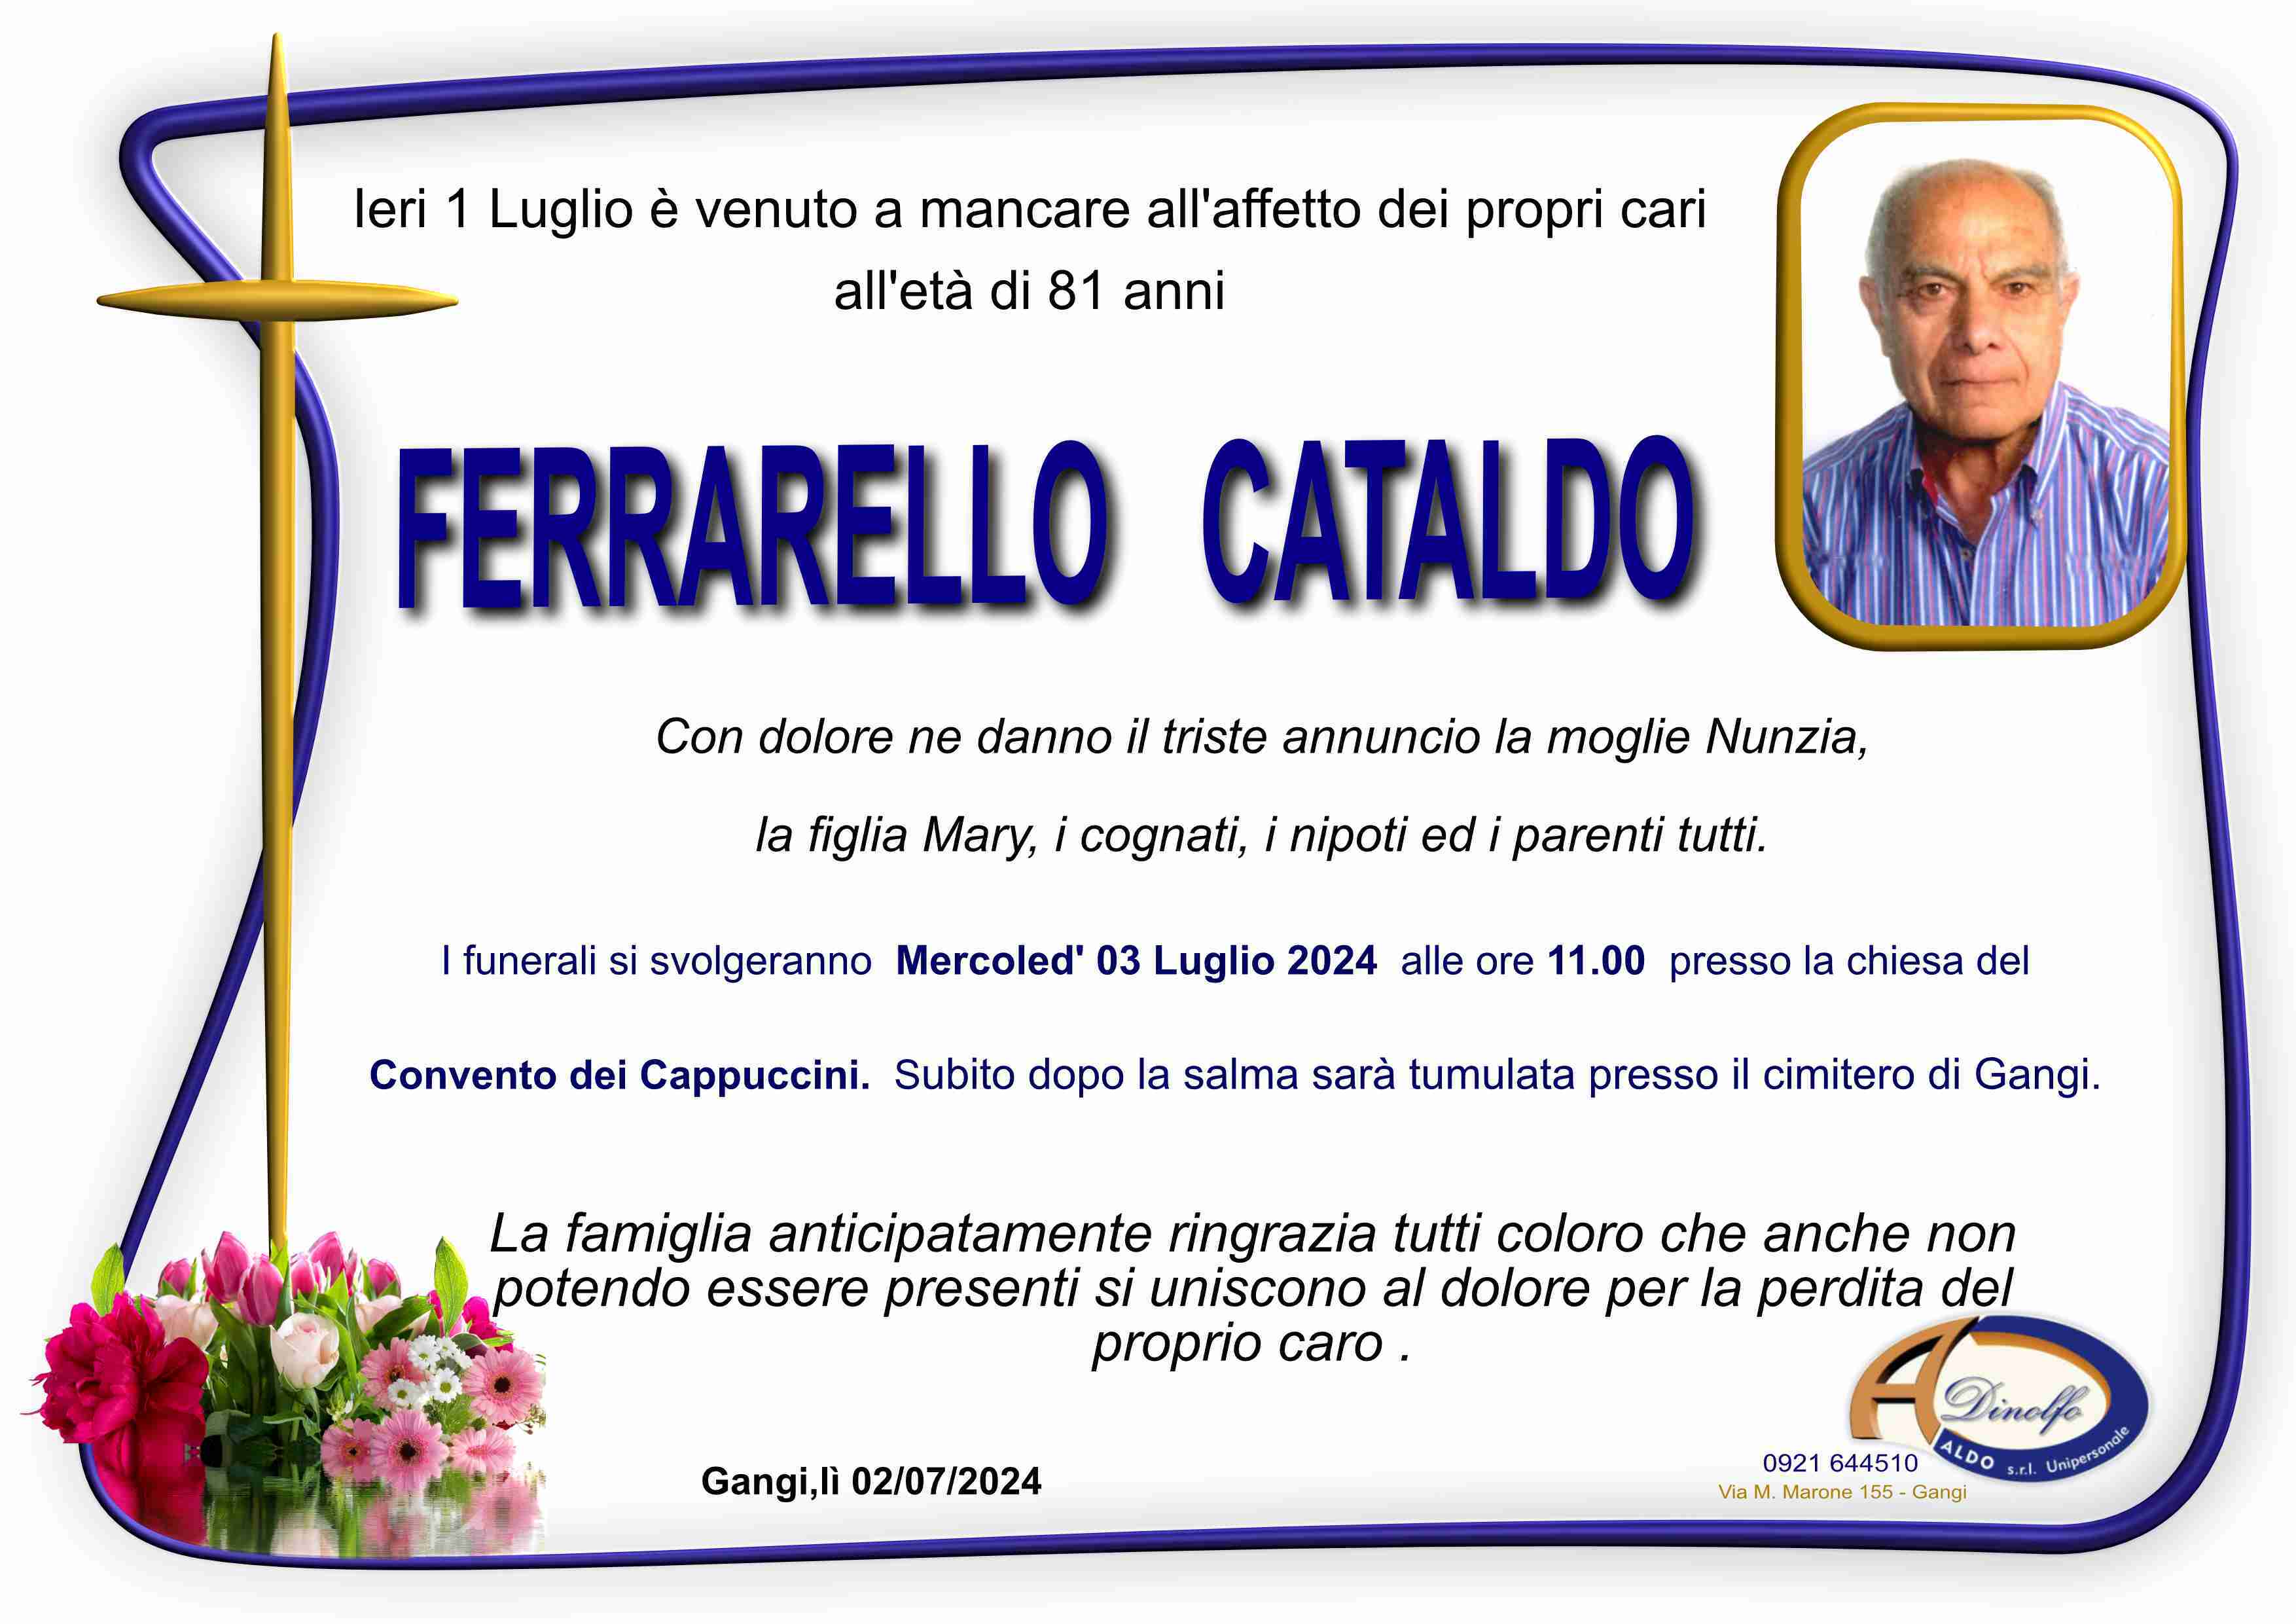 Cataldo Ferrarello